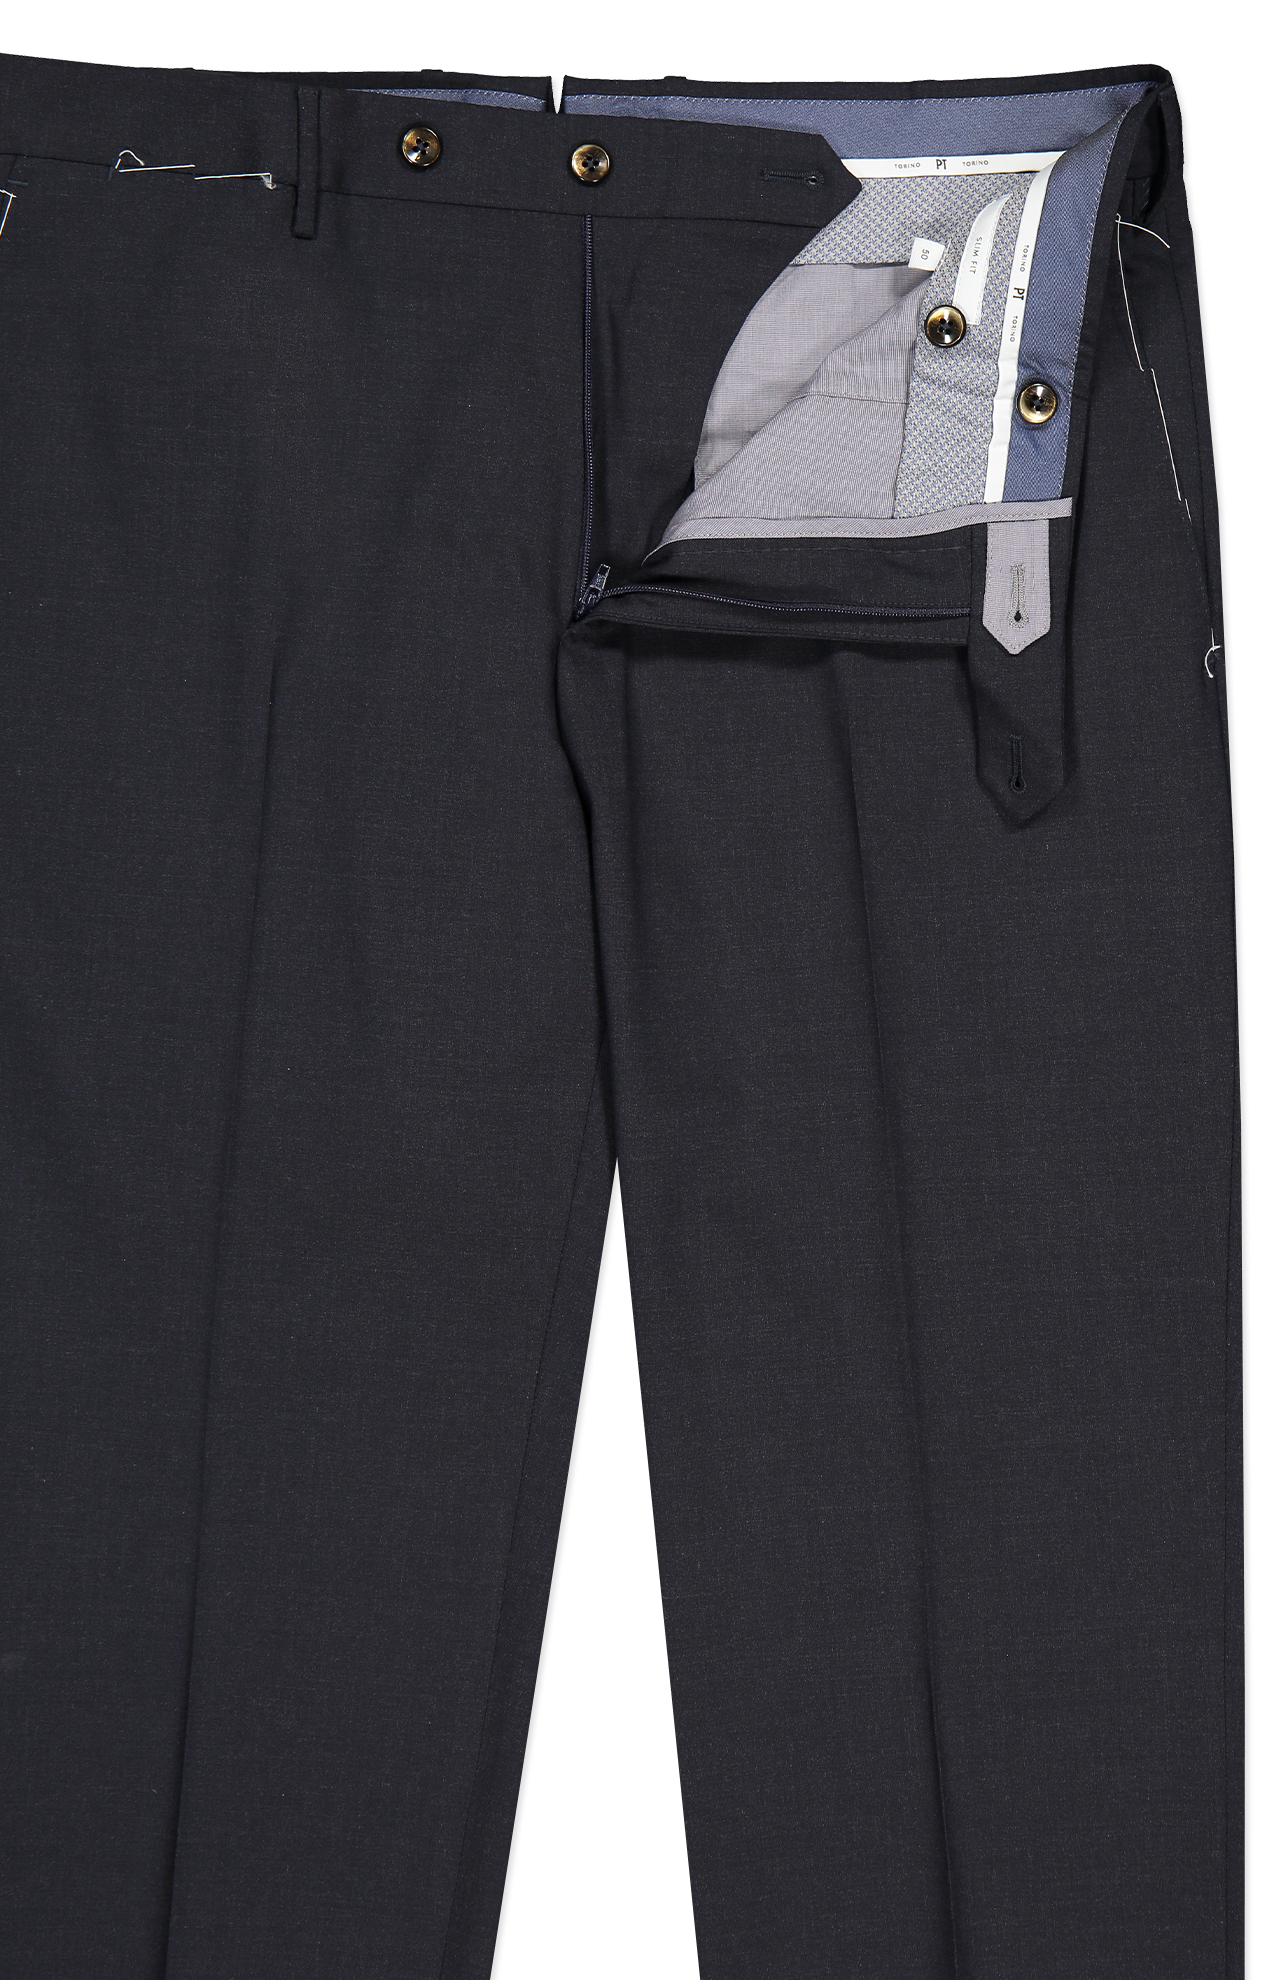 PT Torino Wool Plain Weave Trouser in Navy Melange Front Detail Image (7062203891827)